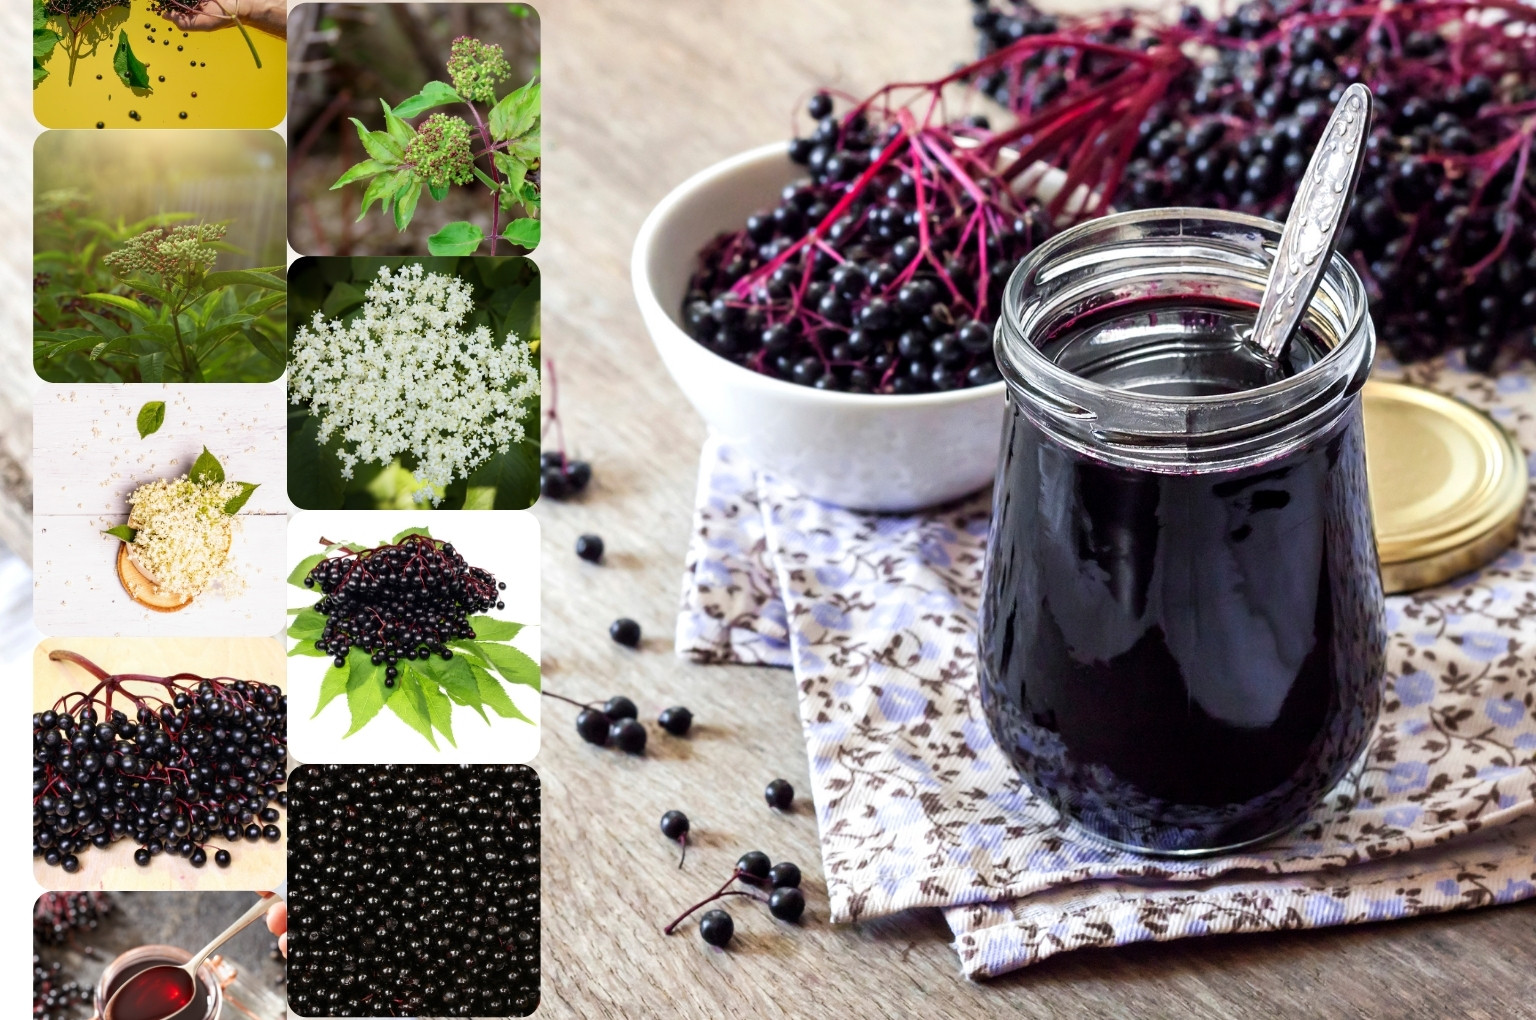 Baza čierna a jej podoby - rastlina s listami, kvetmi, kvet, plody, a sirup či nápoj v koláži obrázkov